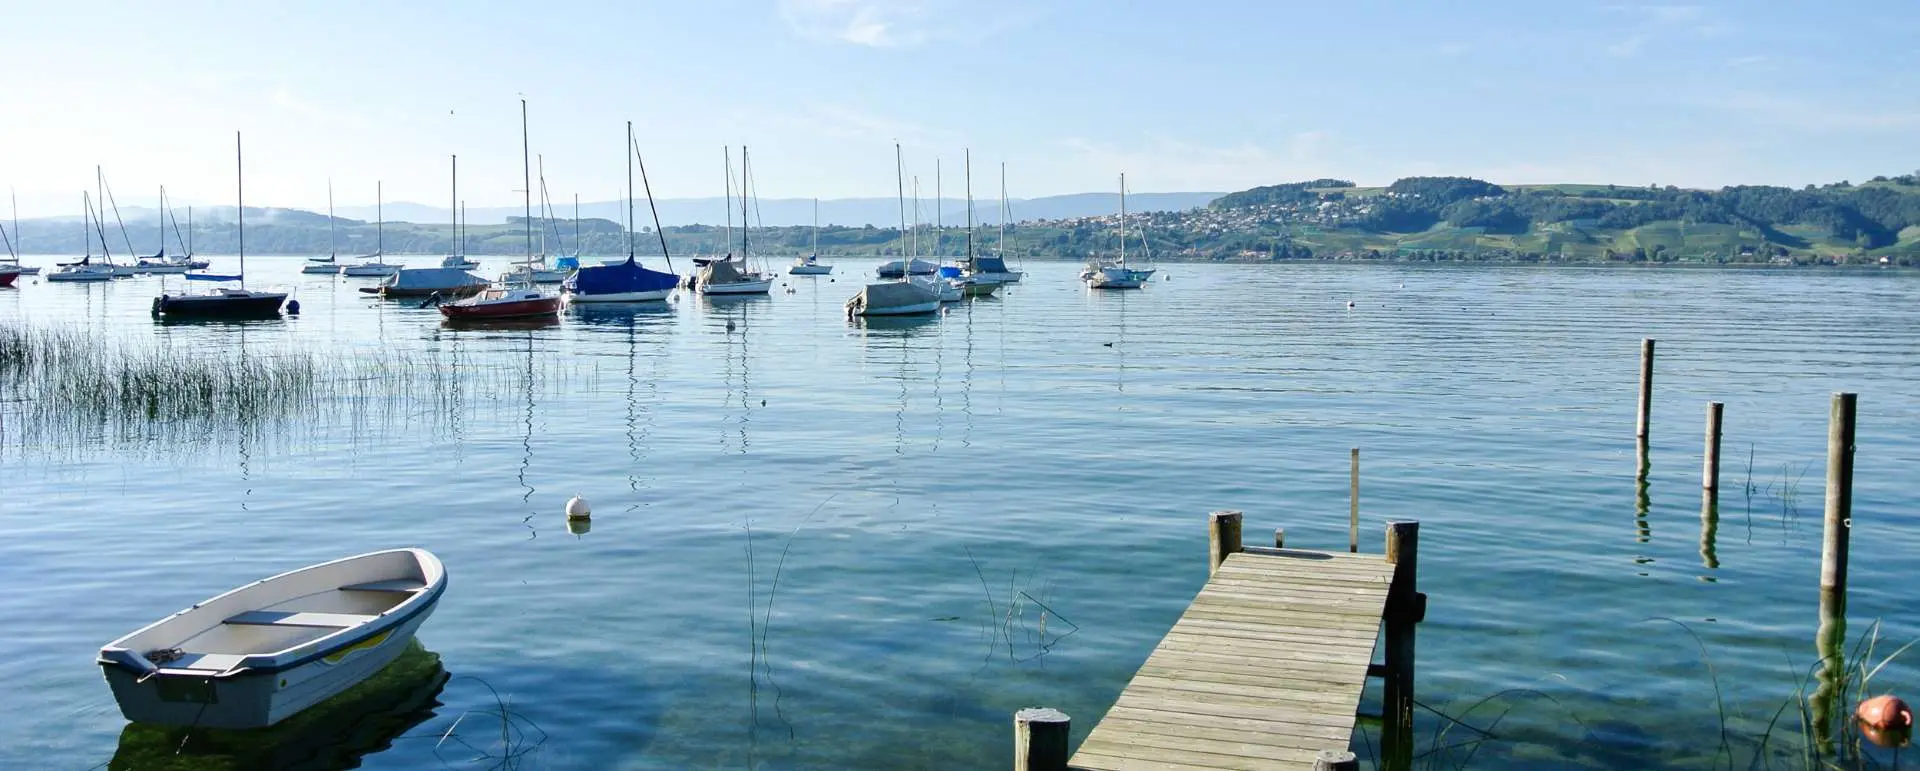 Lake Murten - the destination for groups